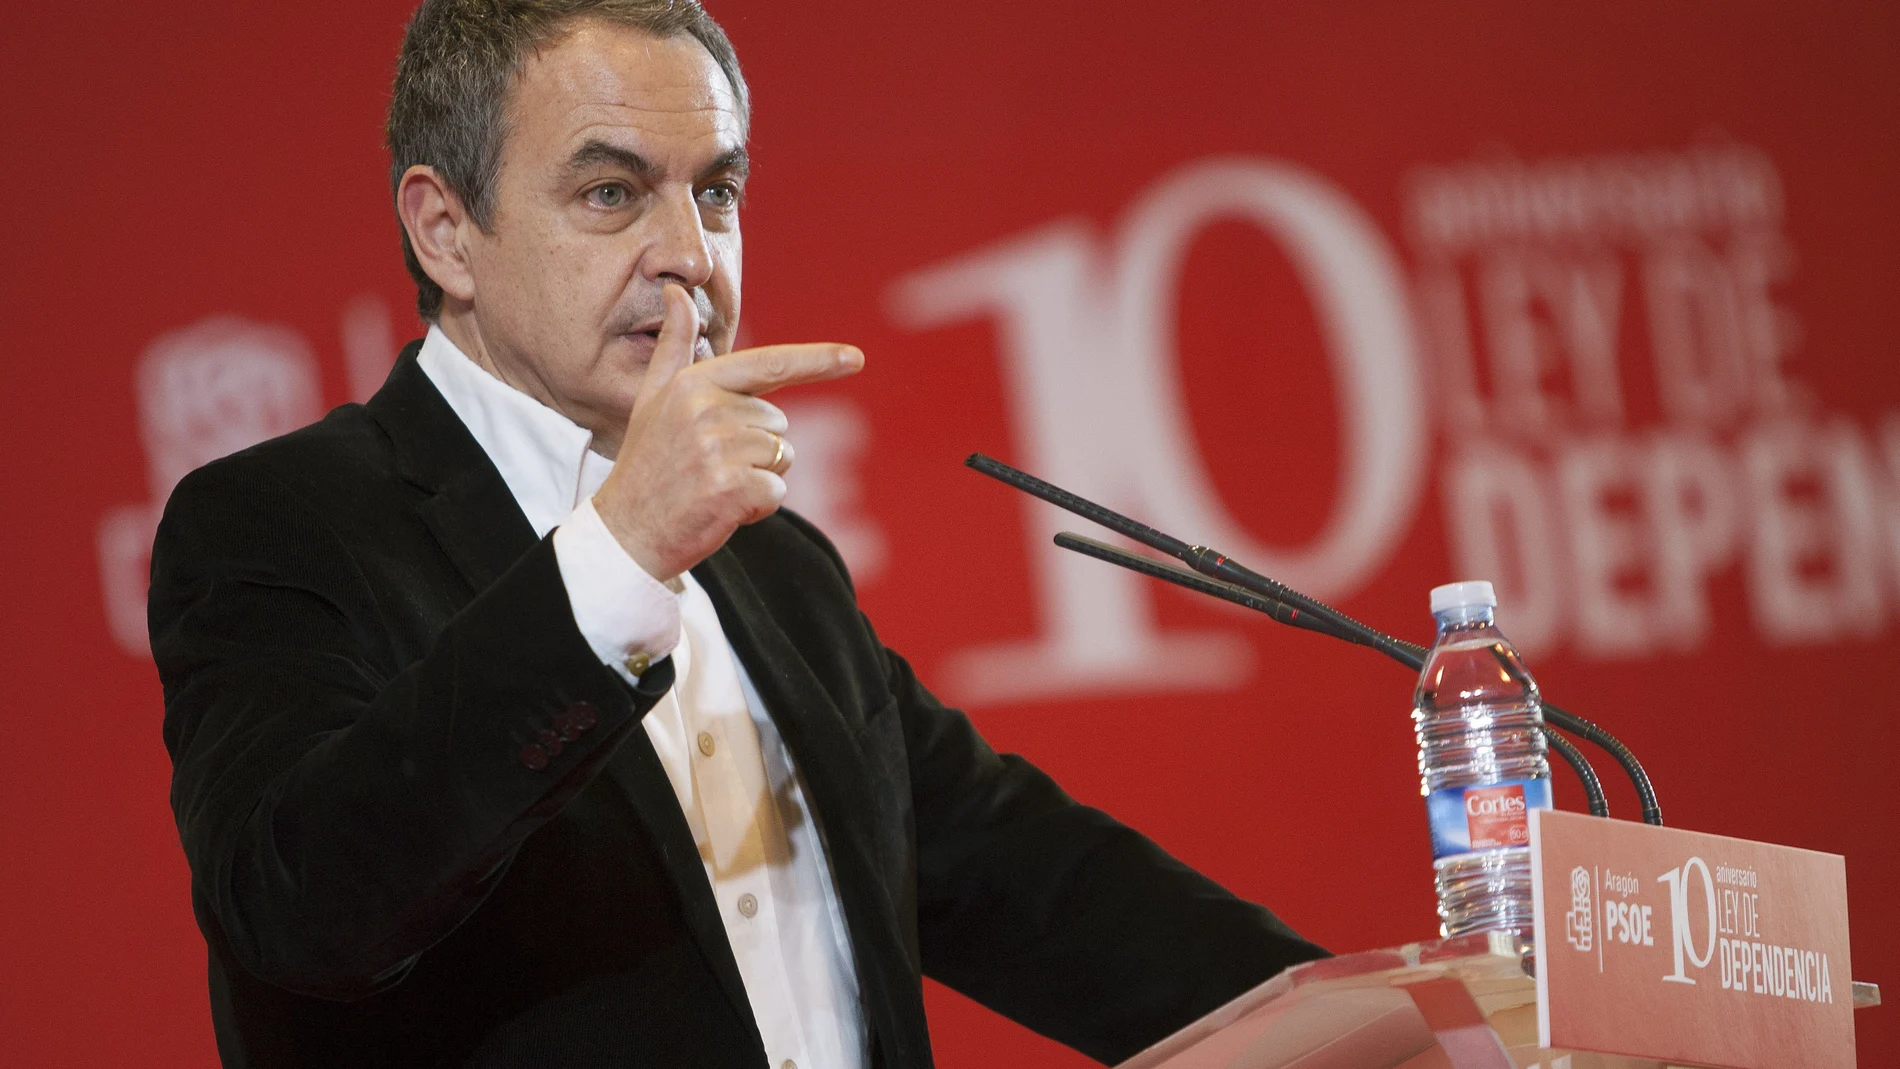 El expresidente del Gobierno, José Luis Rodríguez Zapatero, durante su intervención en la conmemoración del X aniversario de la Ley de la Dependencia